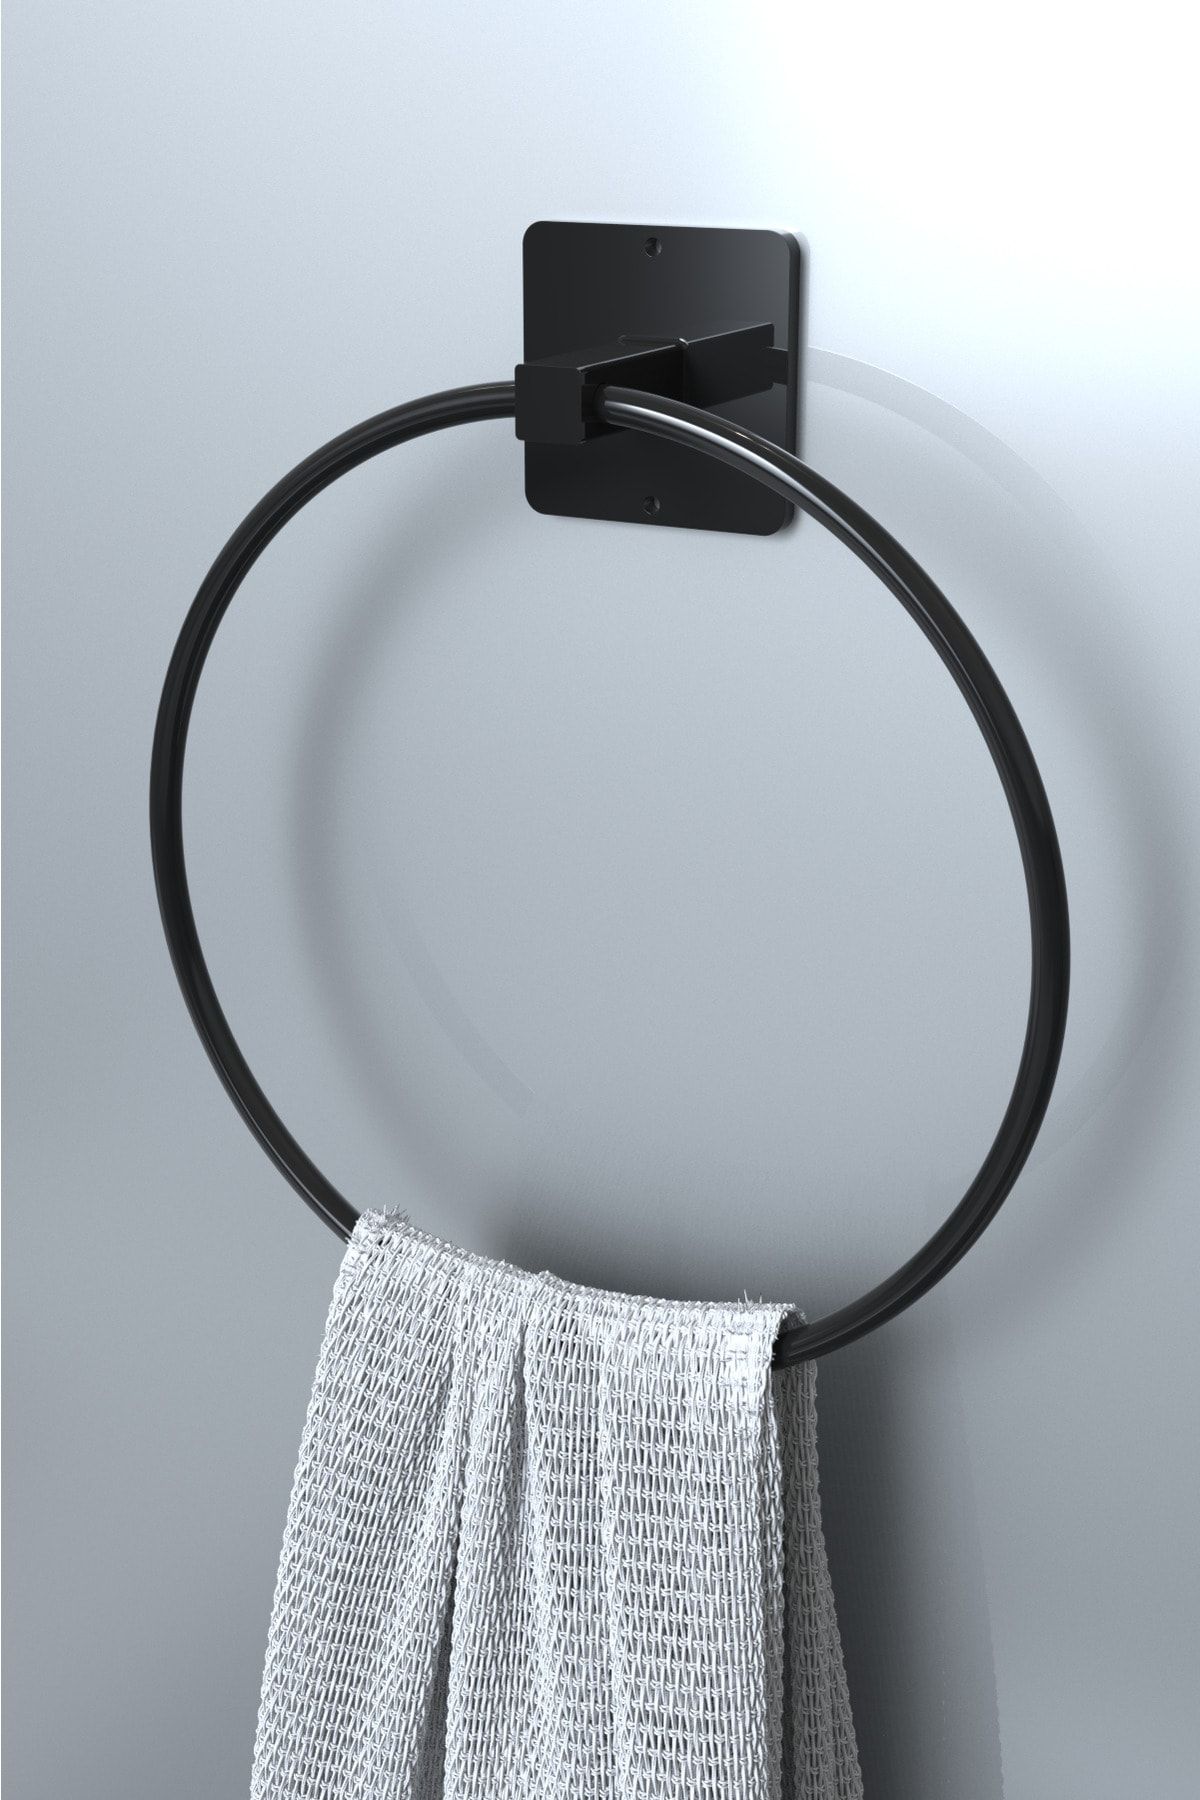 KARTEYA Yapışkanlı Siyah Yuvarlak Havluluk Banyo Mutfak Havlu Askılık